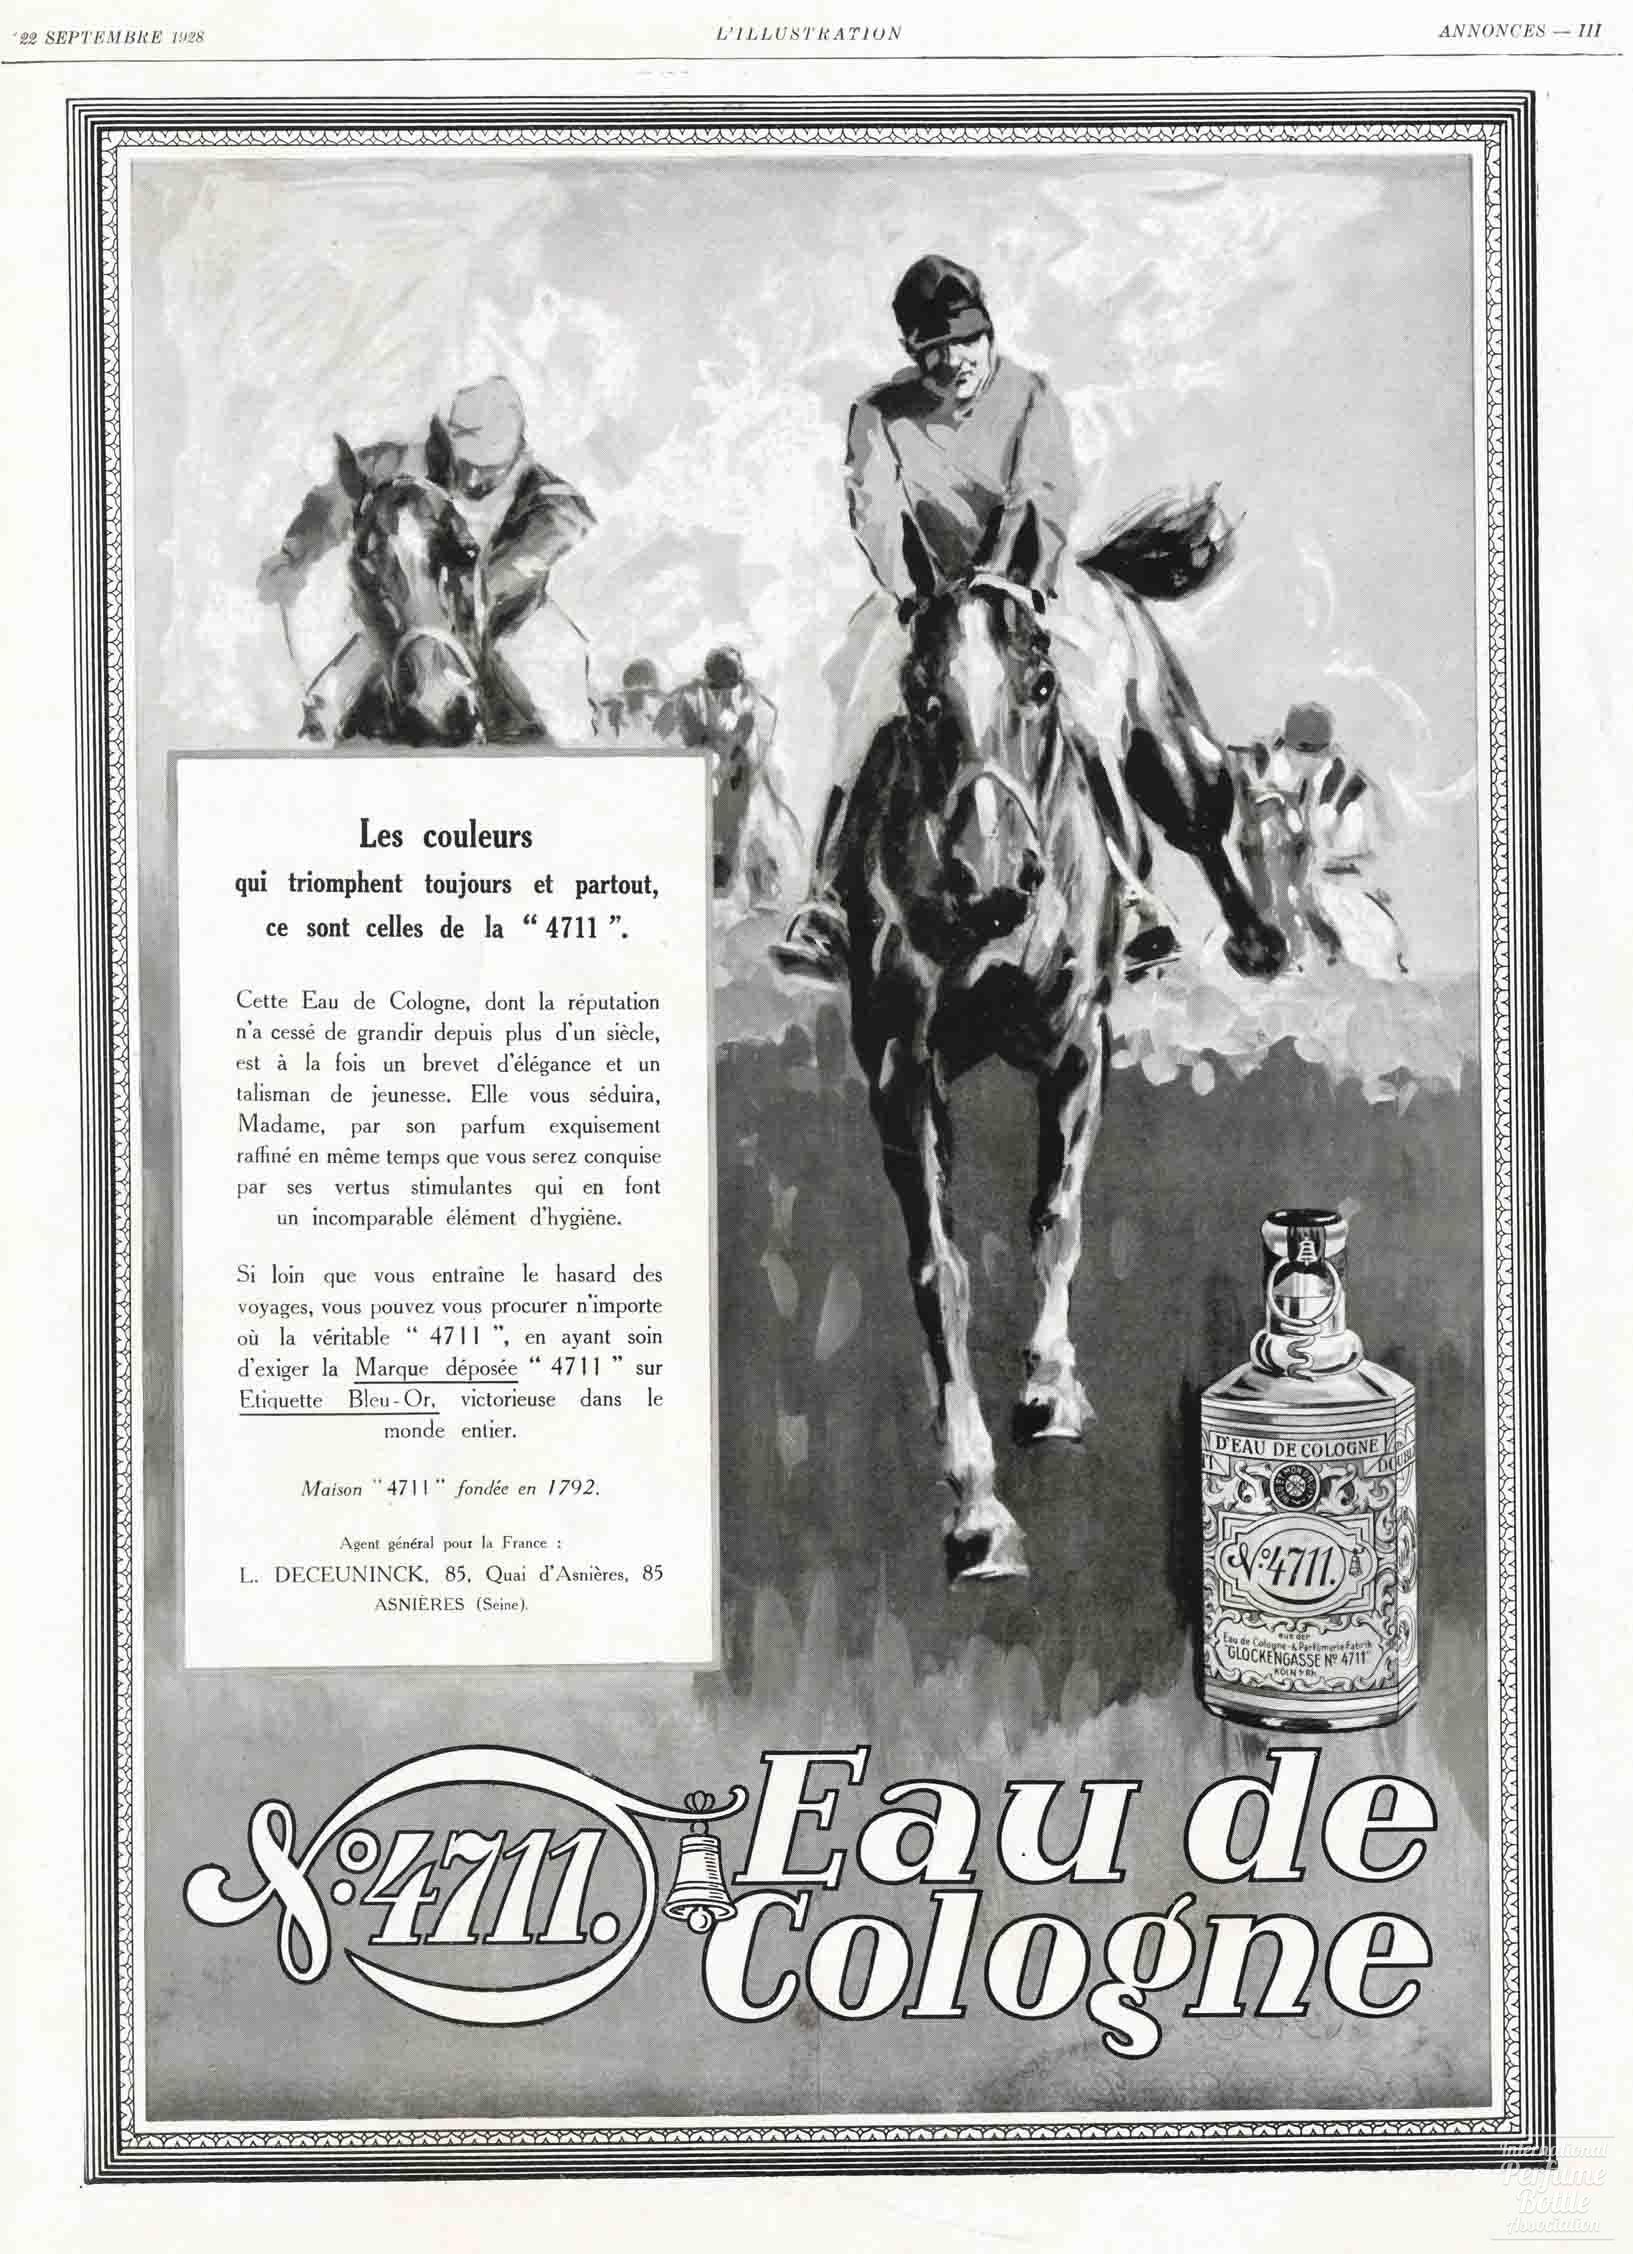 "4711 Eau de Cologne" by Mülhens Advertisement - 1928